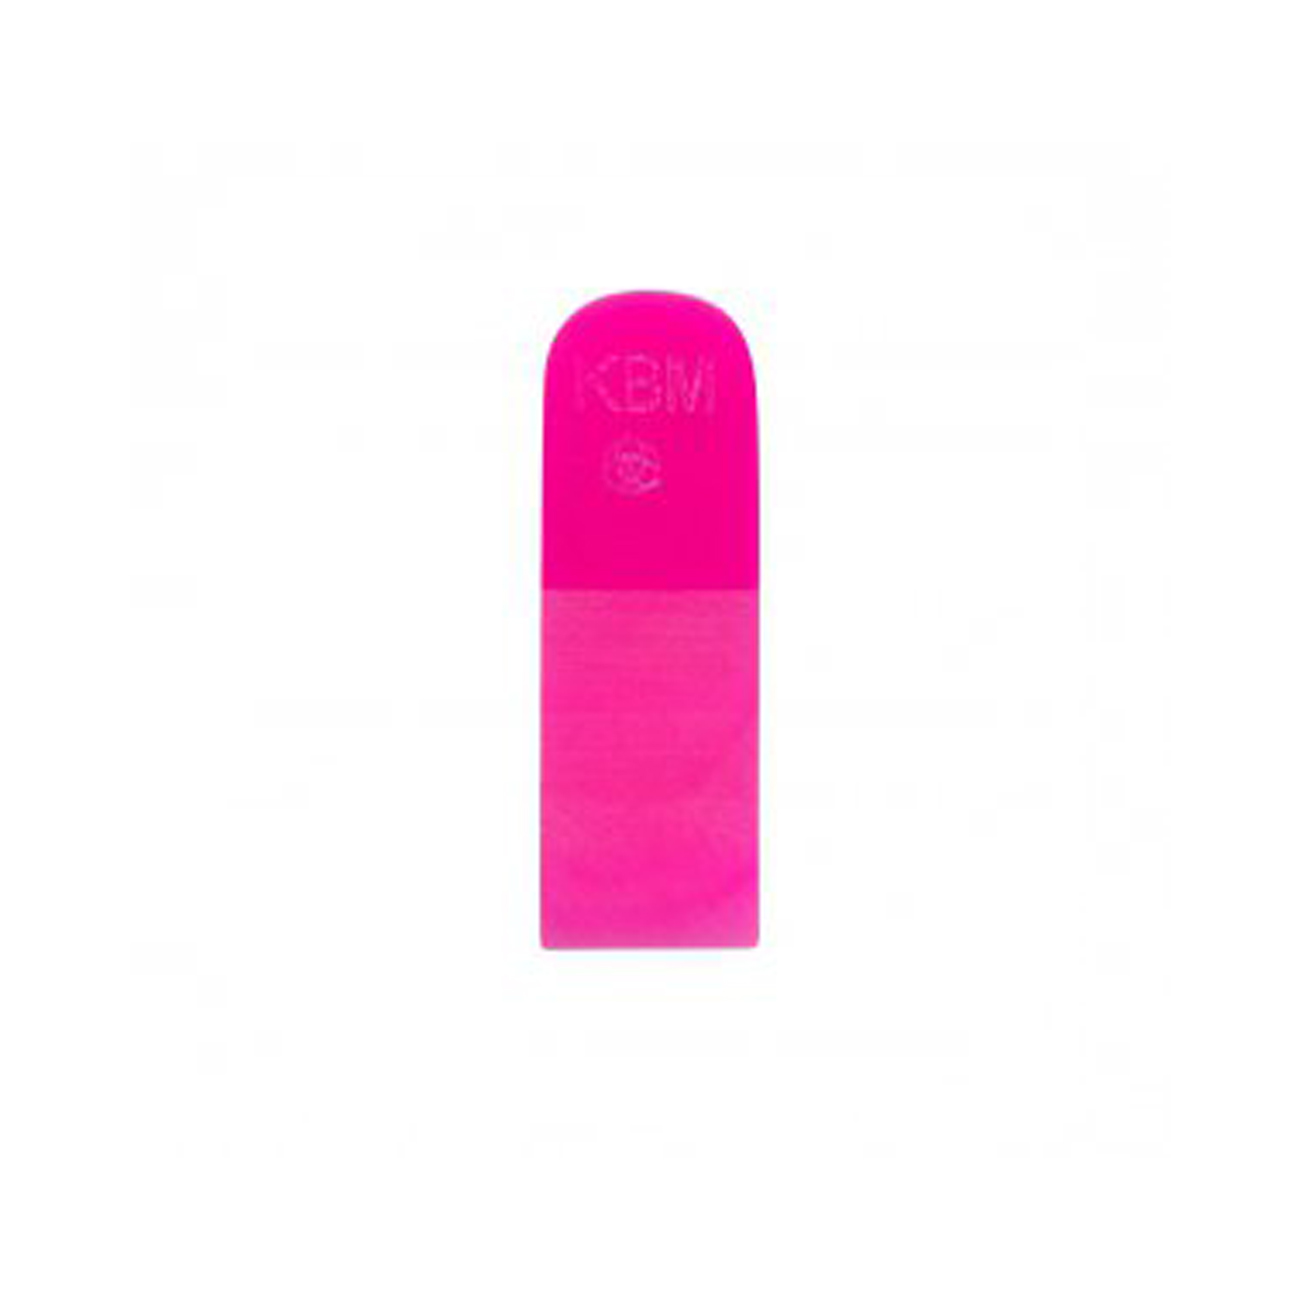 Выгонка KVM 5 полиуретановая розовая 2,5 x 7,5 см